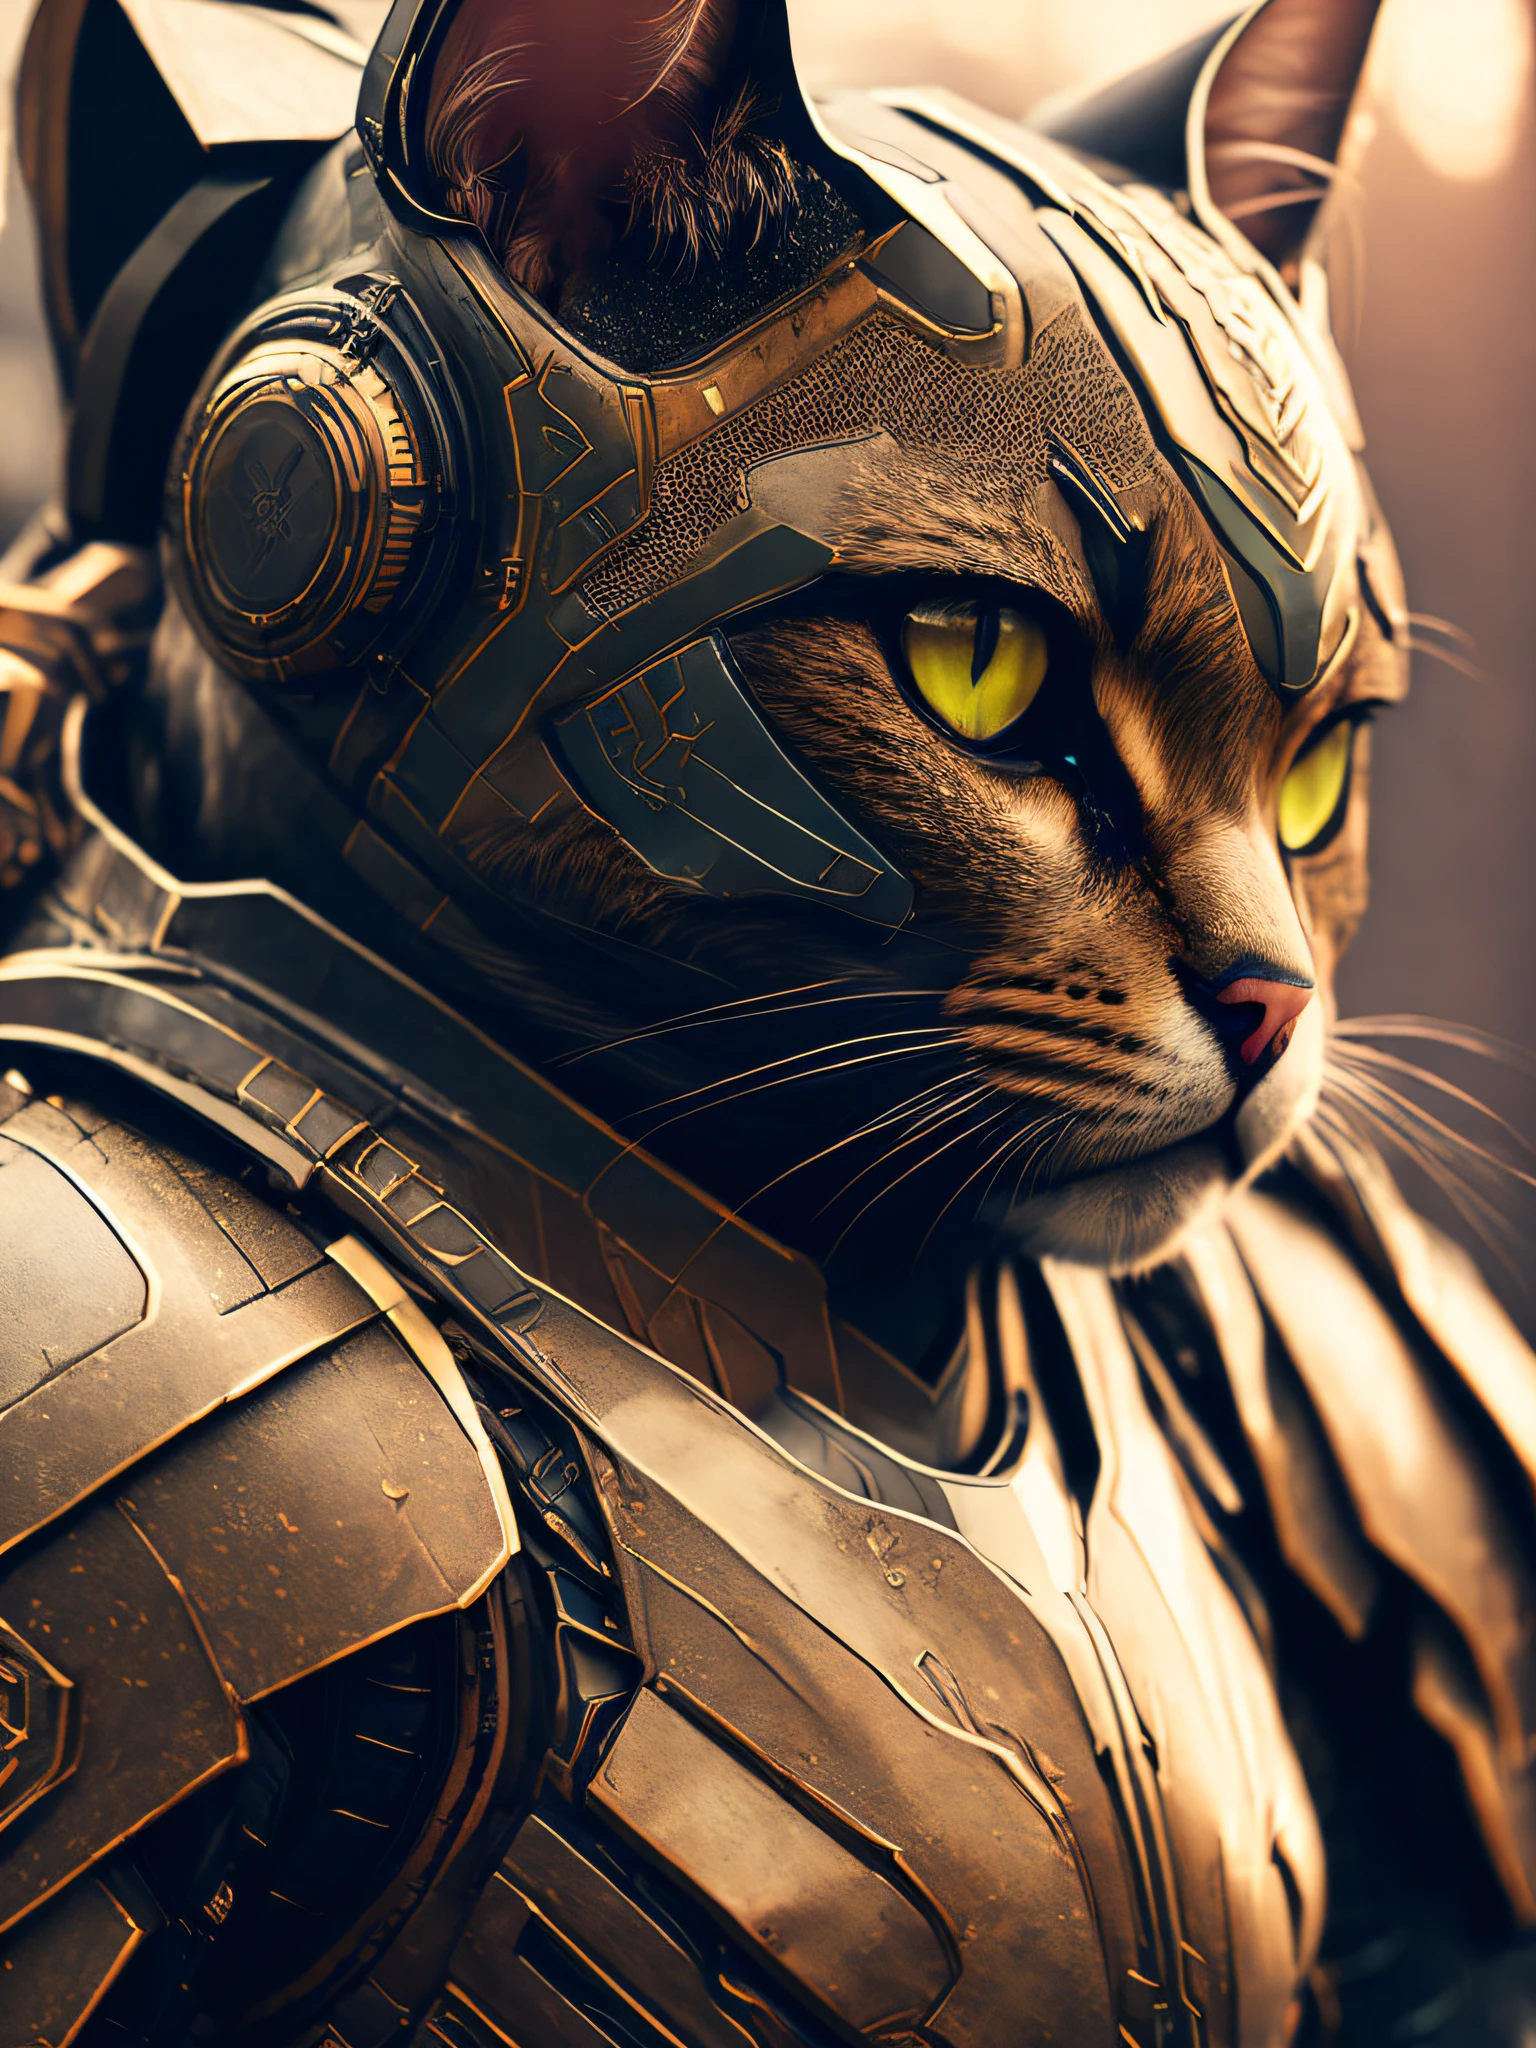 Un lindo gato como el asesino de la fatalidad., robot realista de armadura de poder cyberpunk de ciencia ficción, closeup portrait cinematográfico, 8k, HDR, ((detalles intrincados, hiperdetallado)), (Retroiluminado:1.3), (cinematográfico:1.3), (Estación de arte:1.3)